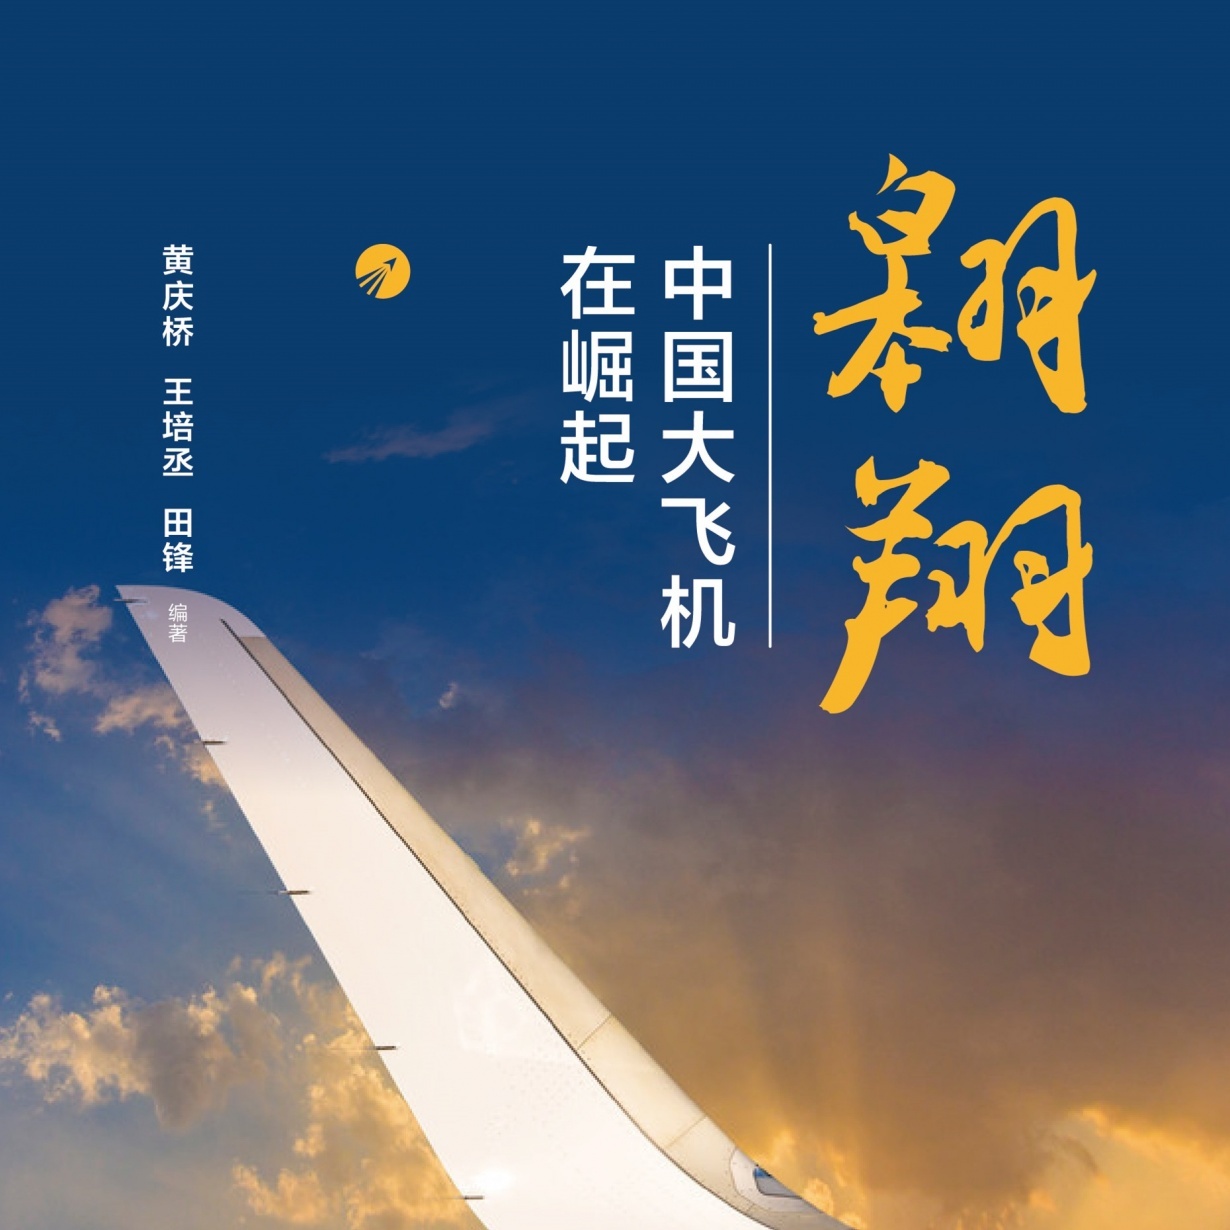 翱翔：中国大飞机在崛起【有声书】【精选】.mp3